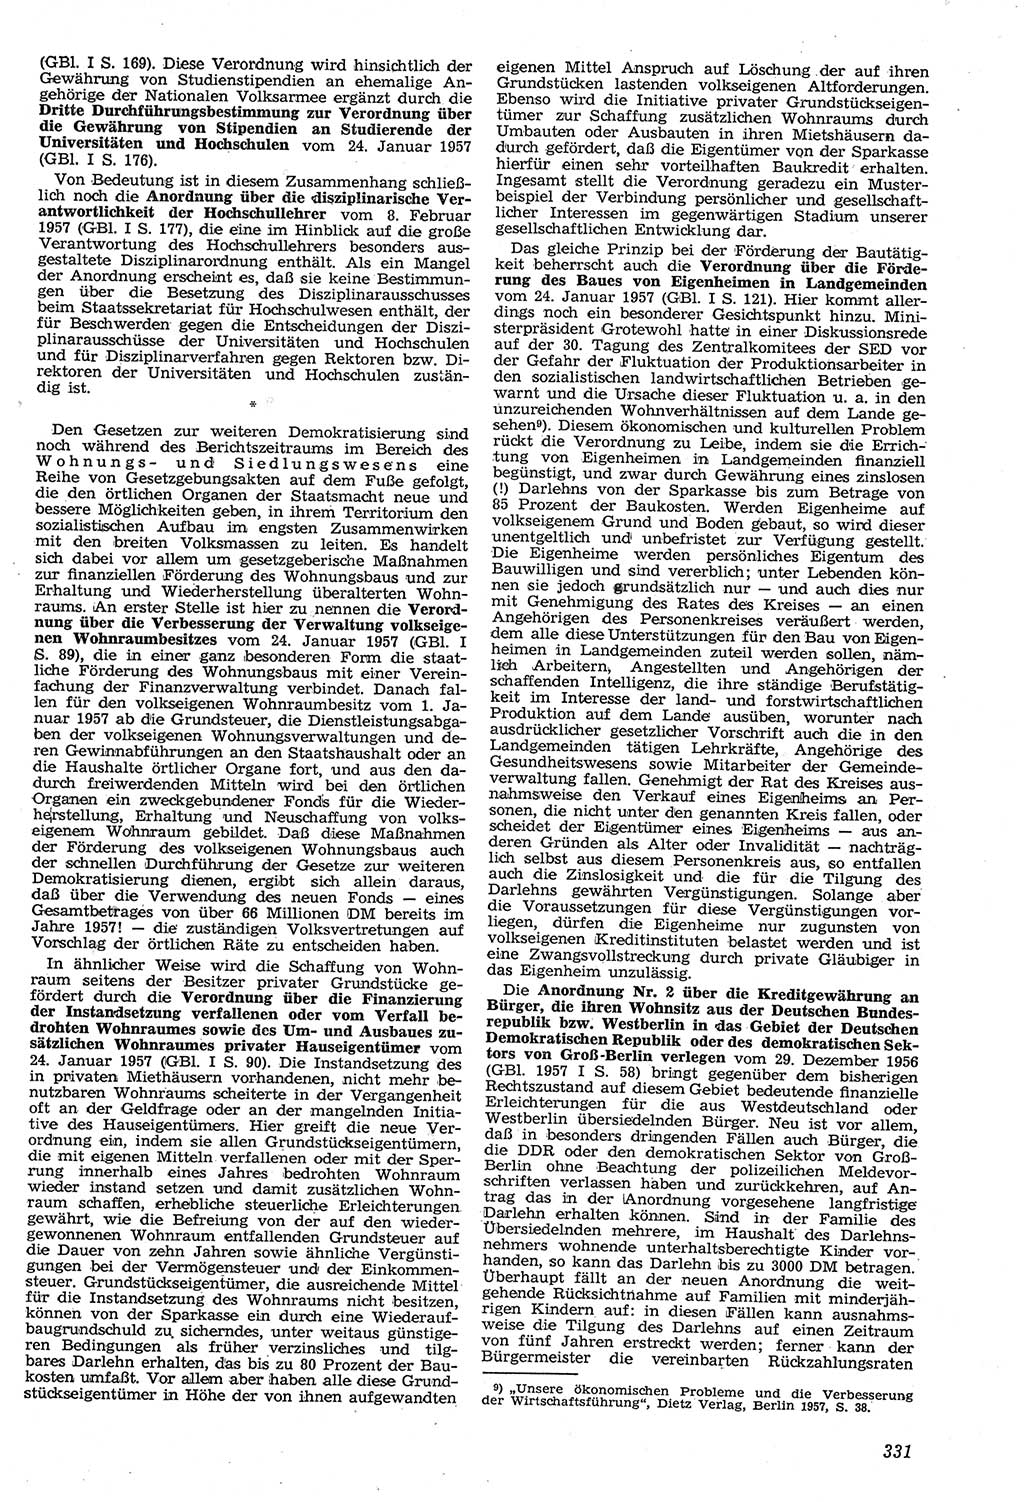 Neue Justiz (NJ), Zeitschrift für Recht und Rechtswissenschaft [Deutsche Demokratische Republik (DDR)], 11. Jahrgang 1957, Seite 331 (NJ DDR 1957, S. 331)